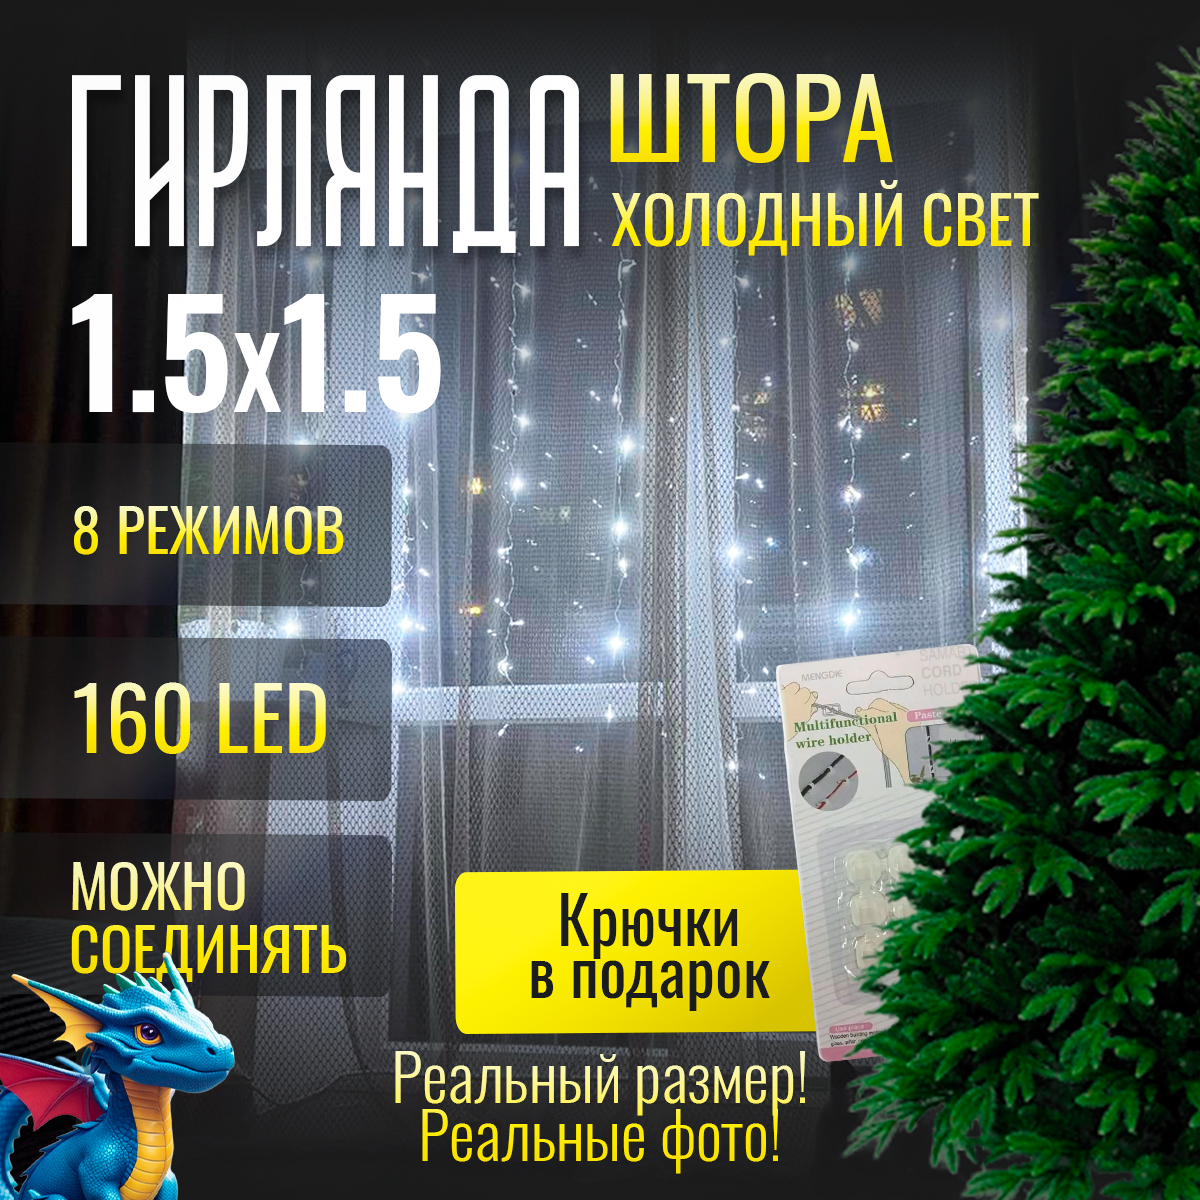 Гирлянда Новогодняя Занавес Штора "Белый Холодный Цвет" 160 лампочек, 1.5 метра, питание от сети 220 В + подарок